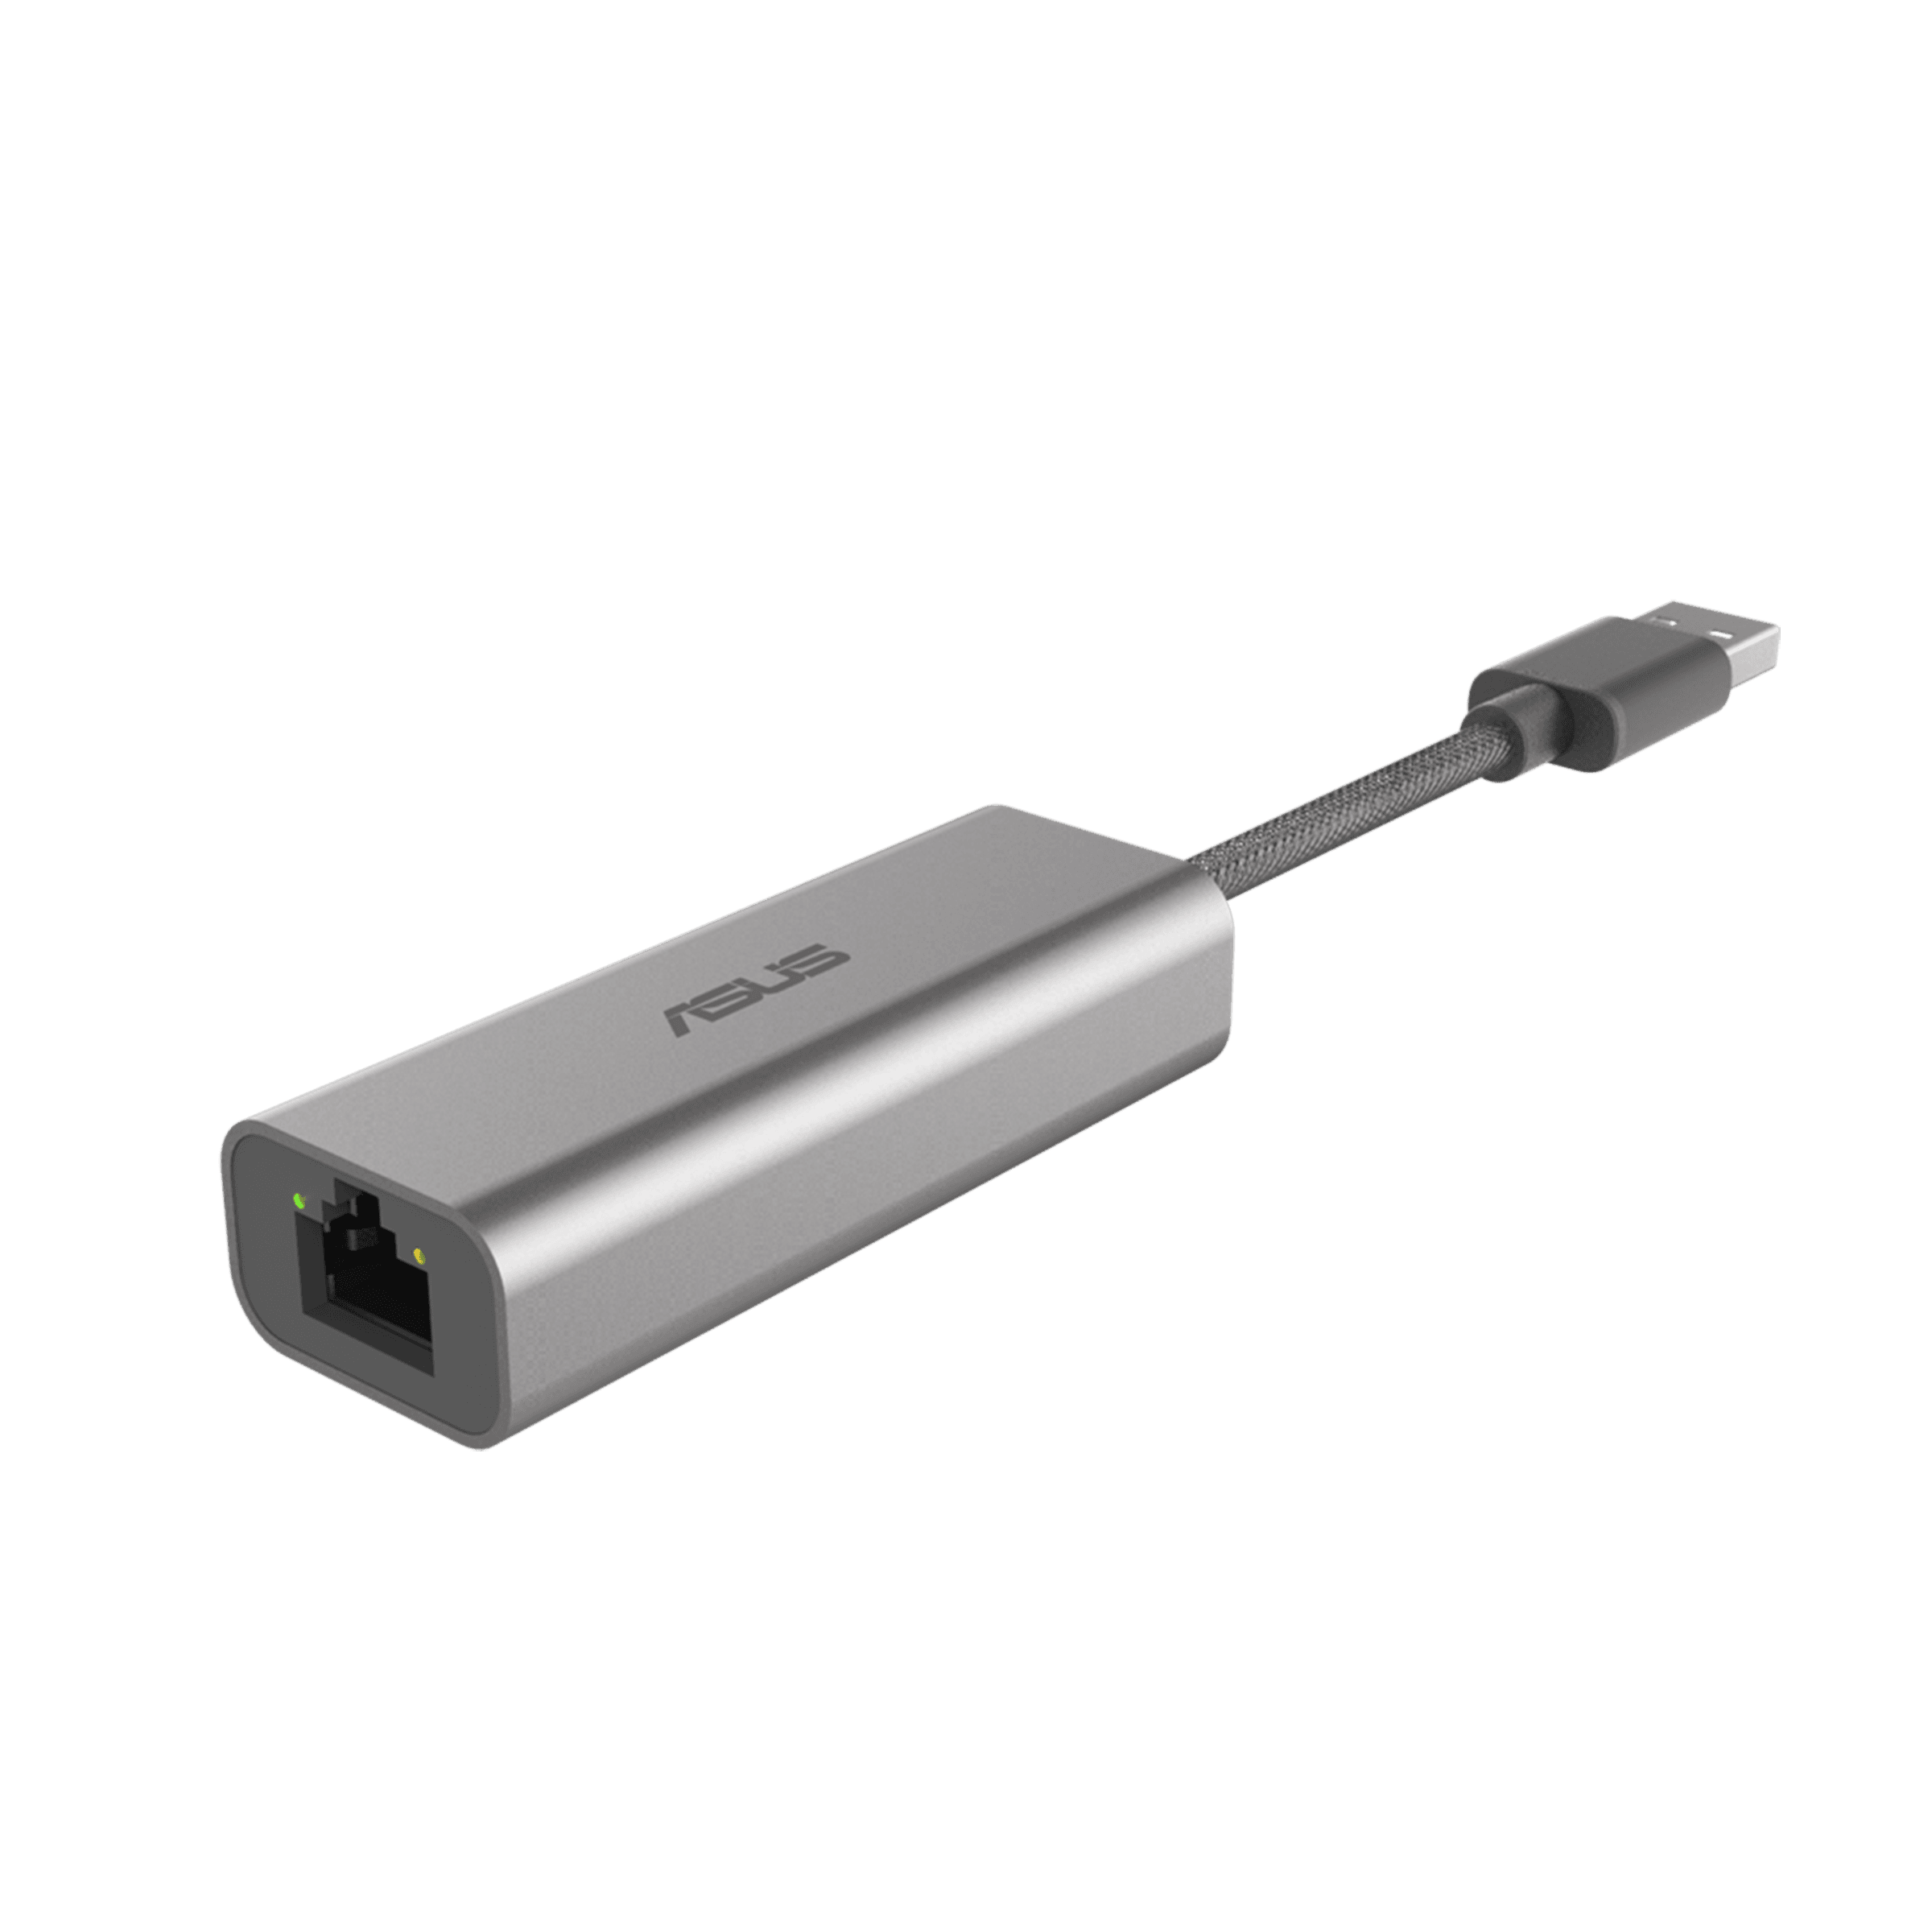 ASUS USB-C2500